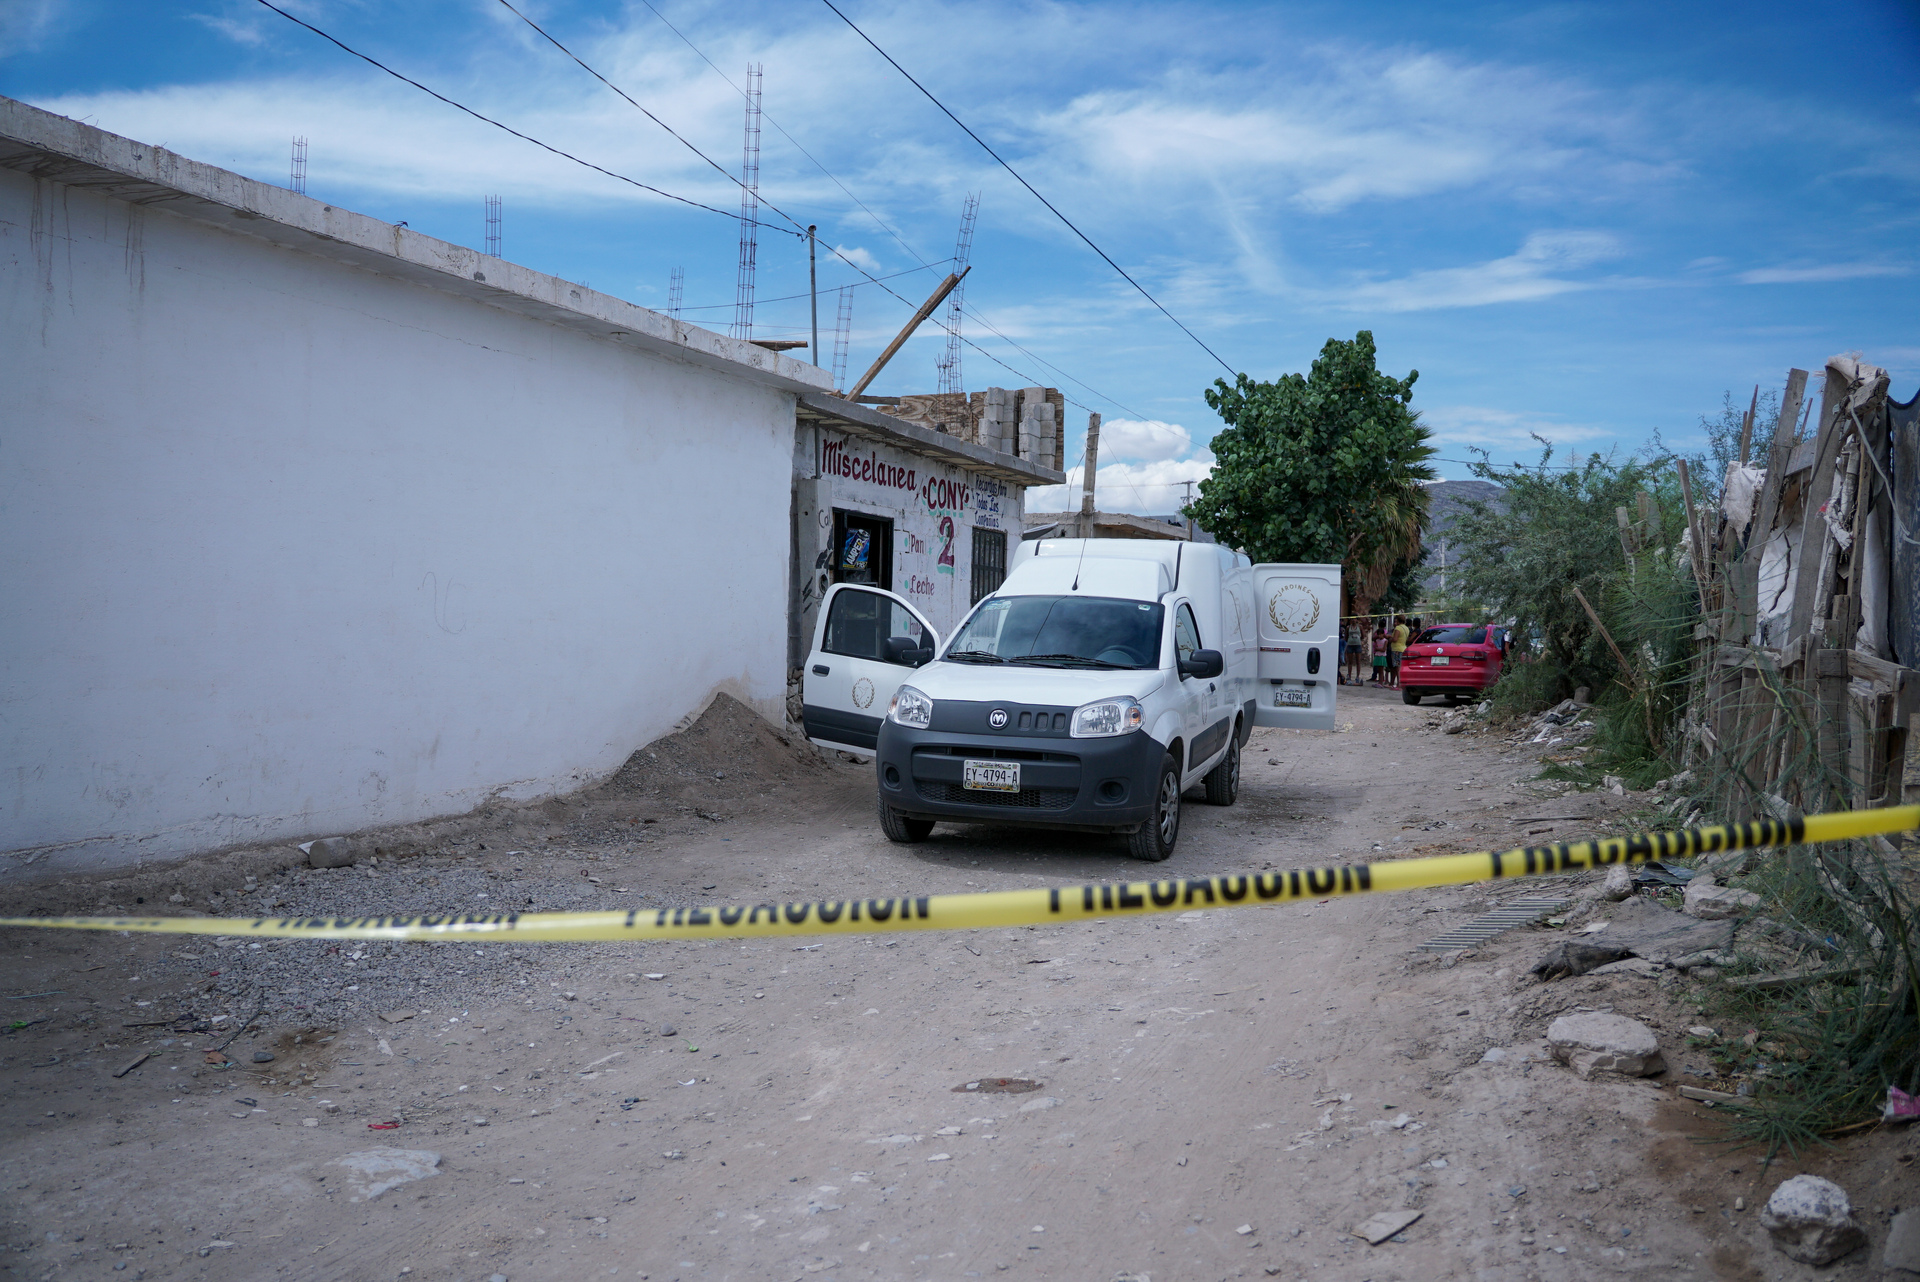 Suman más de 40 víctimas por homicidios y lesiones con armas de fuego en Coahuila en 2022